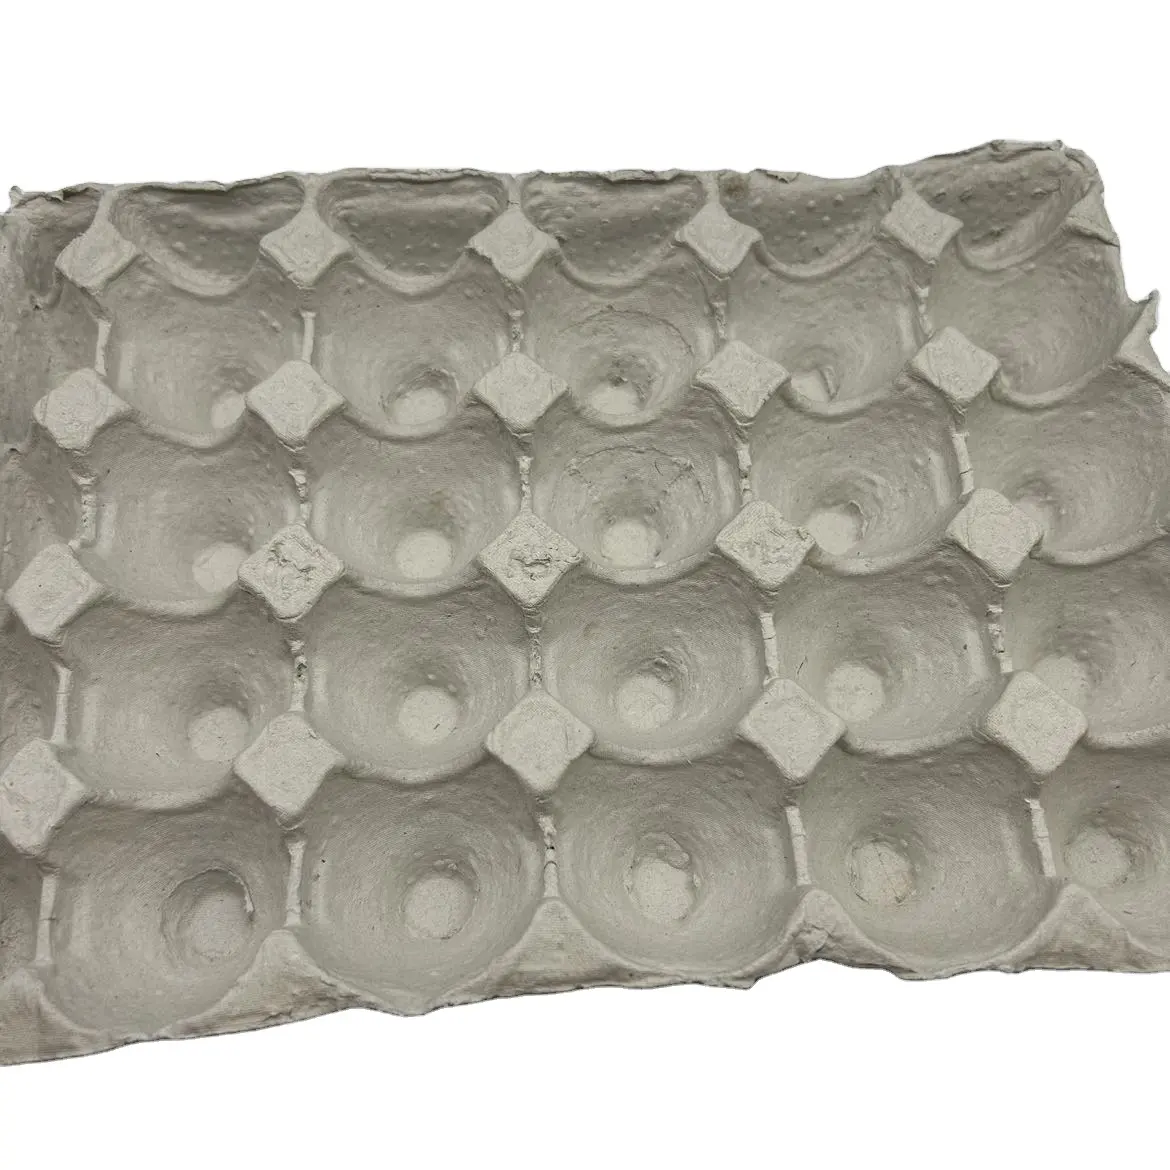 Grosir 6 12 15 18 30 lubang karton telur puyuh baki sarang kotak kertas dapat ditumpuk pemegang segar dibentuk daur ulang warna-warni murah